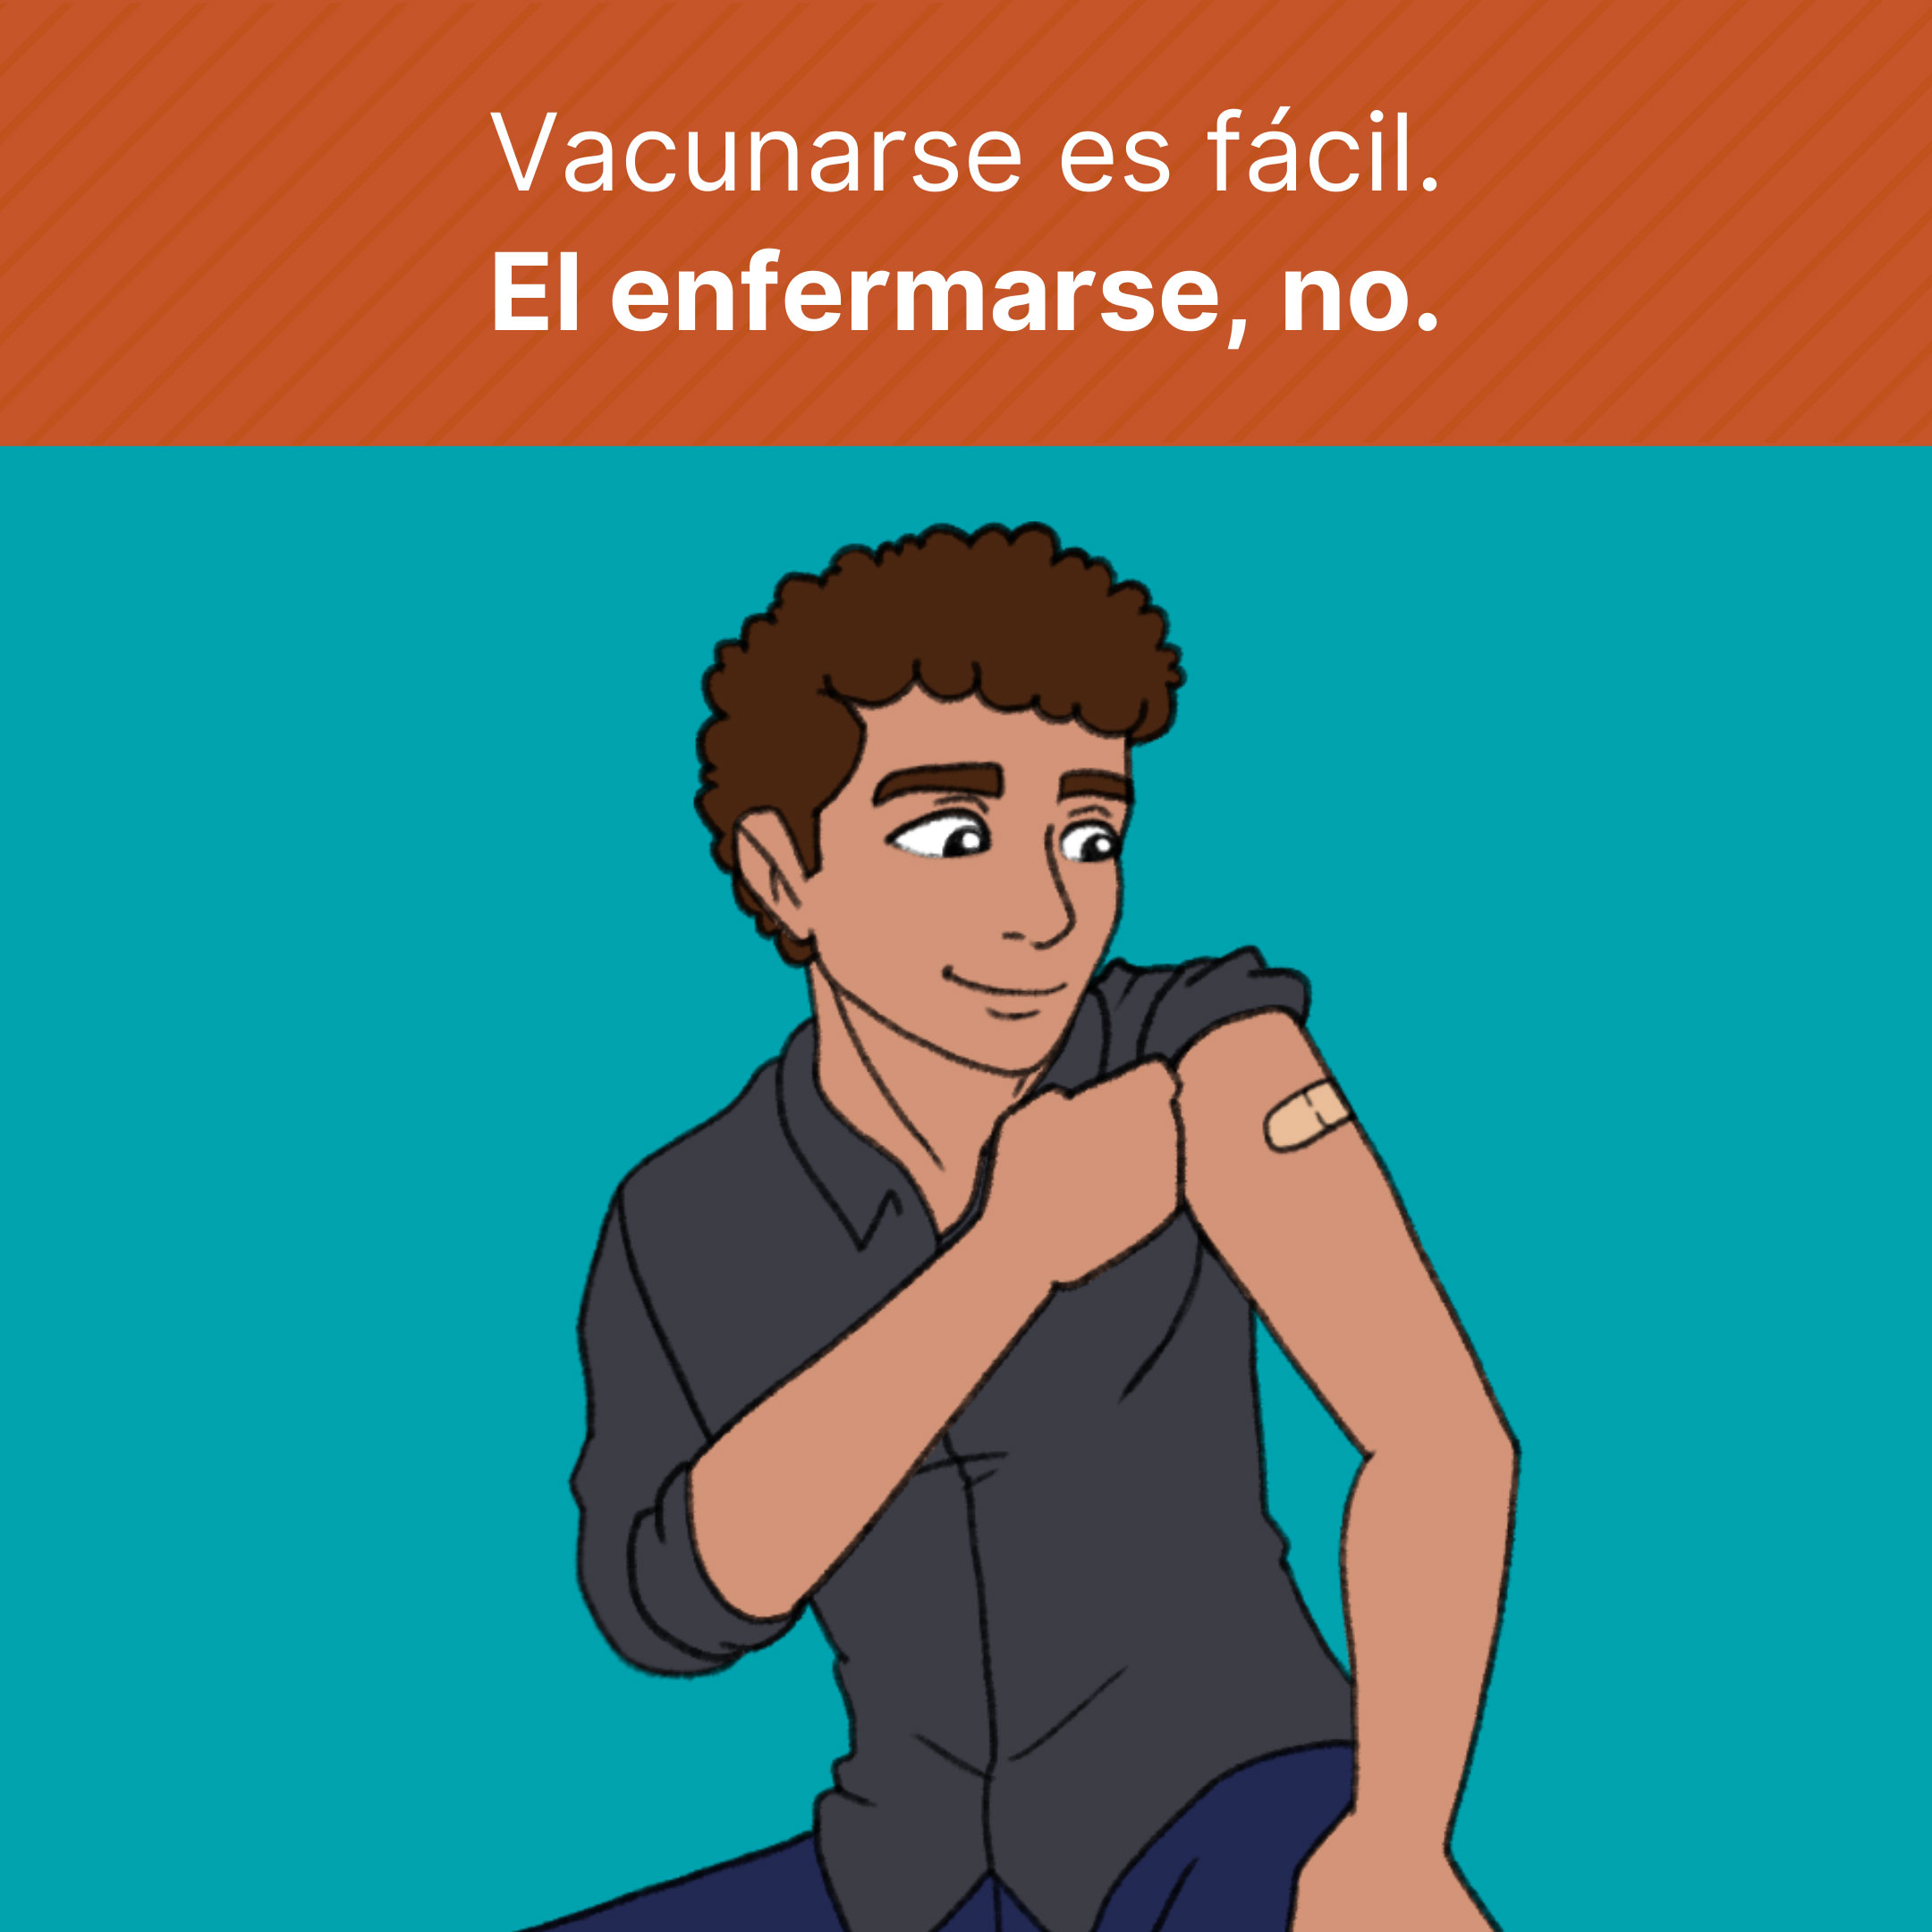 Joven (dibujo animado) mostrando una tira adhesiva (curita) en su brazo después de recibir una vacuna. Texto dice: Vacunarse es fácil. El enfermarse, no.